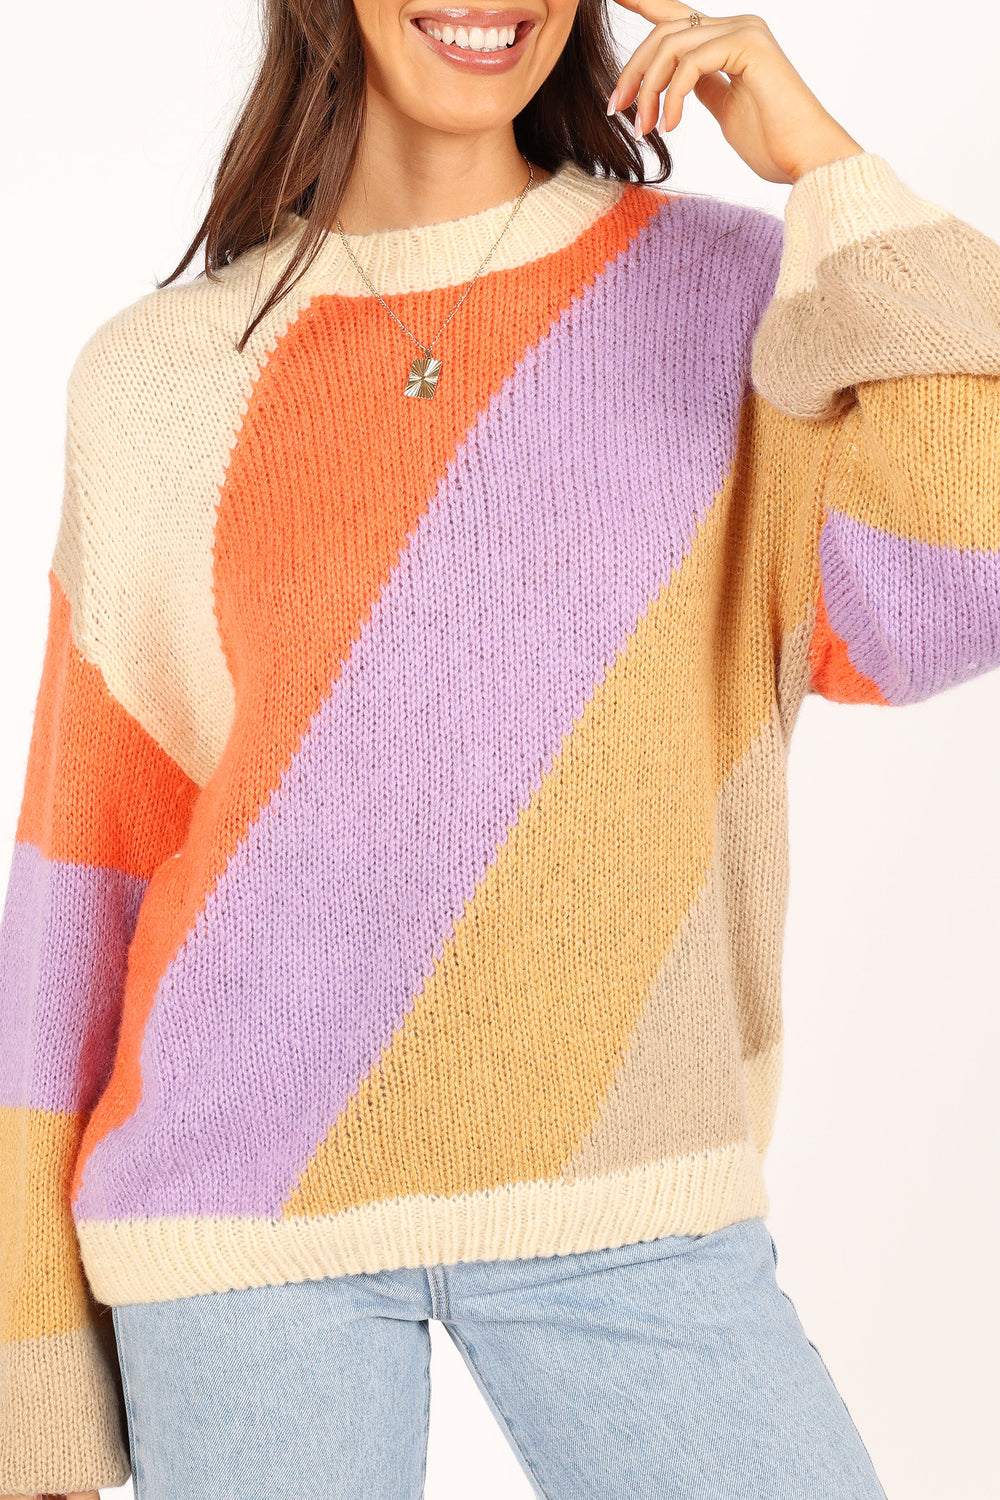 KNITWEAR @Rhiannon Knit Sweater - Multi